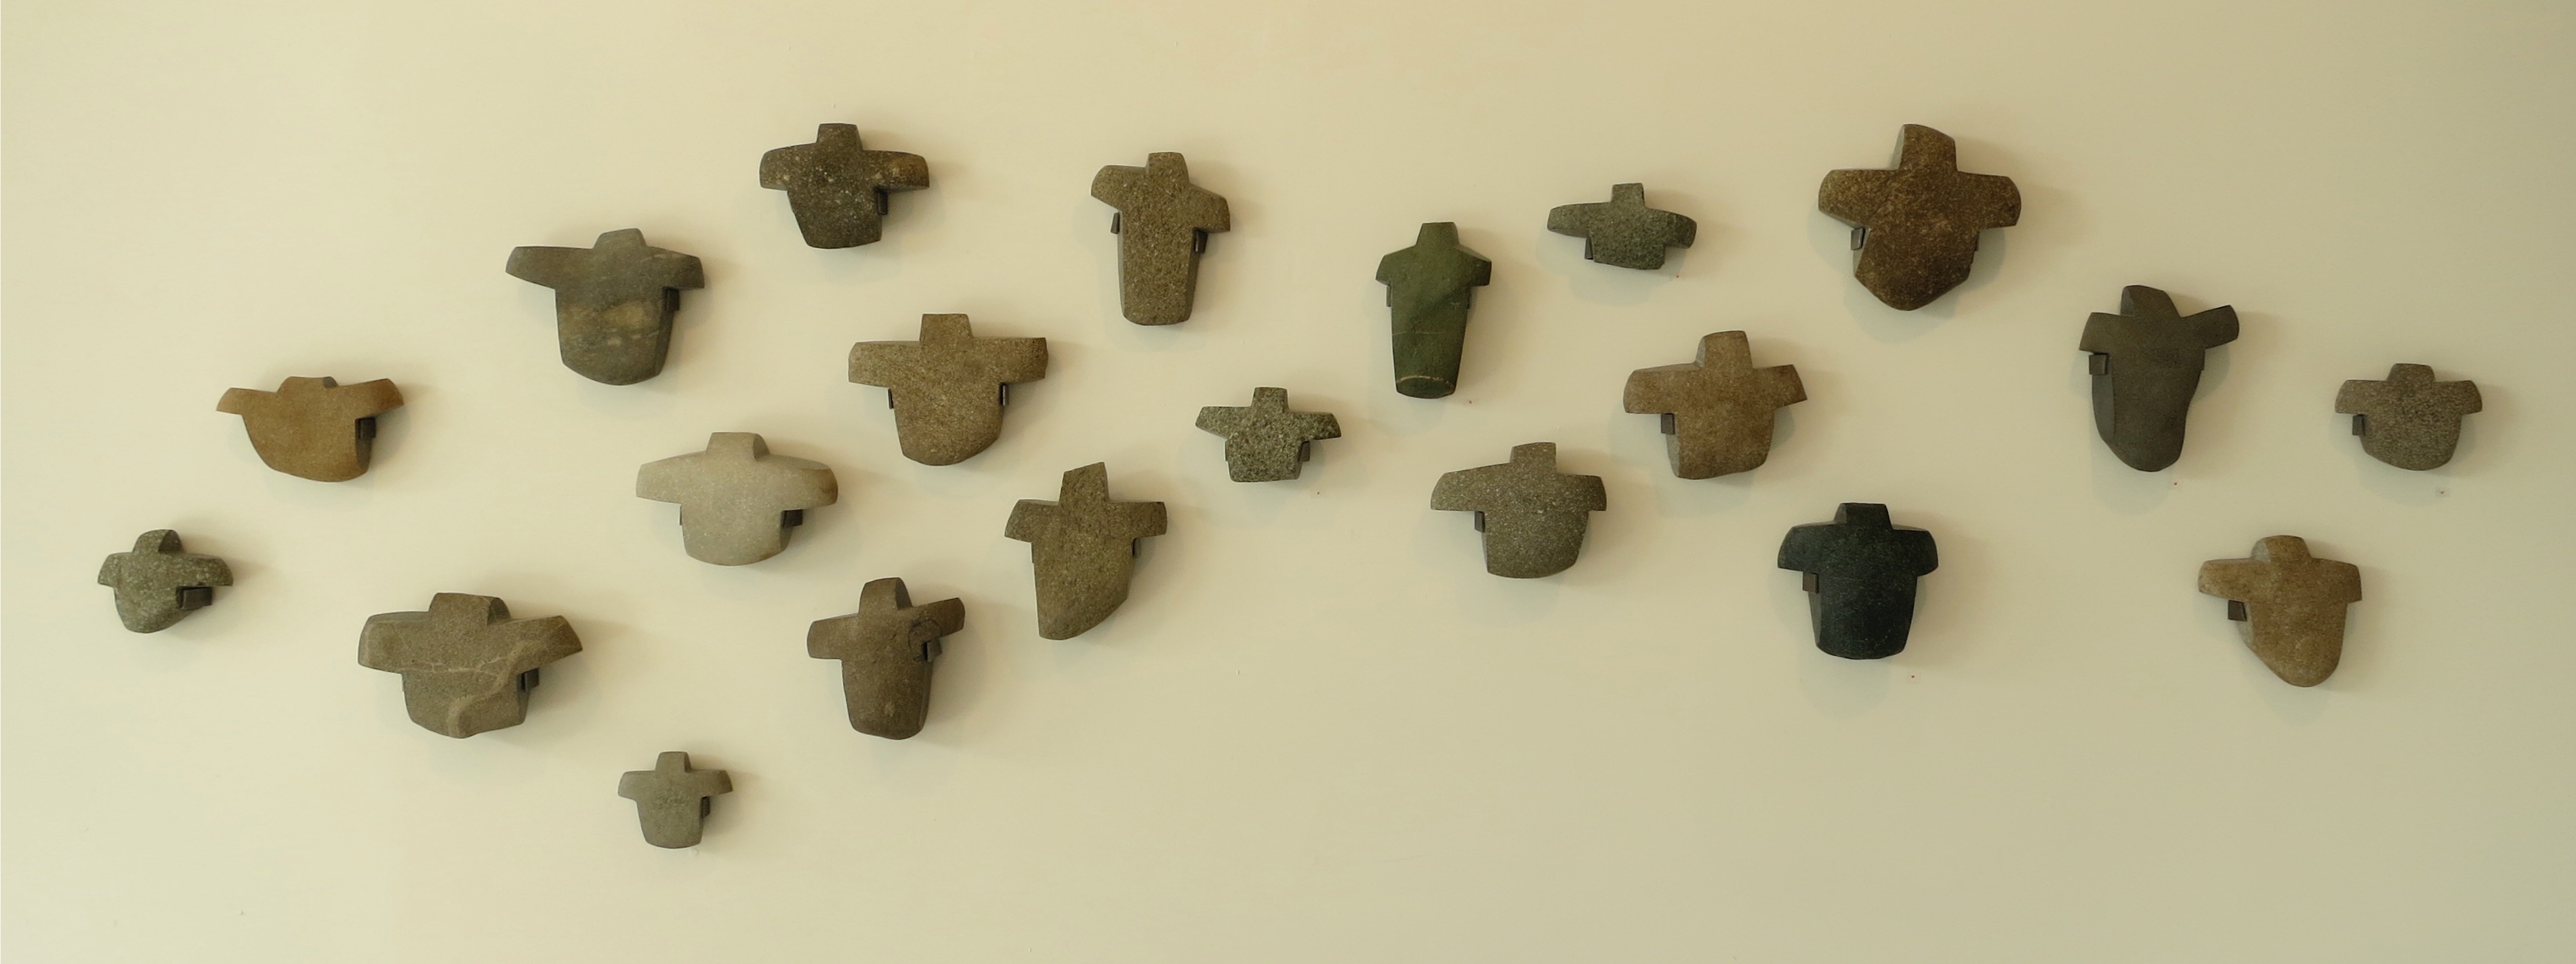 Chest Pieces. River Stones, 35” H x 4” D x 102” W, Bob Leverich